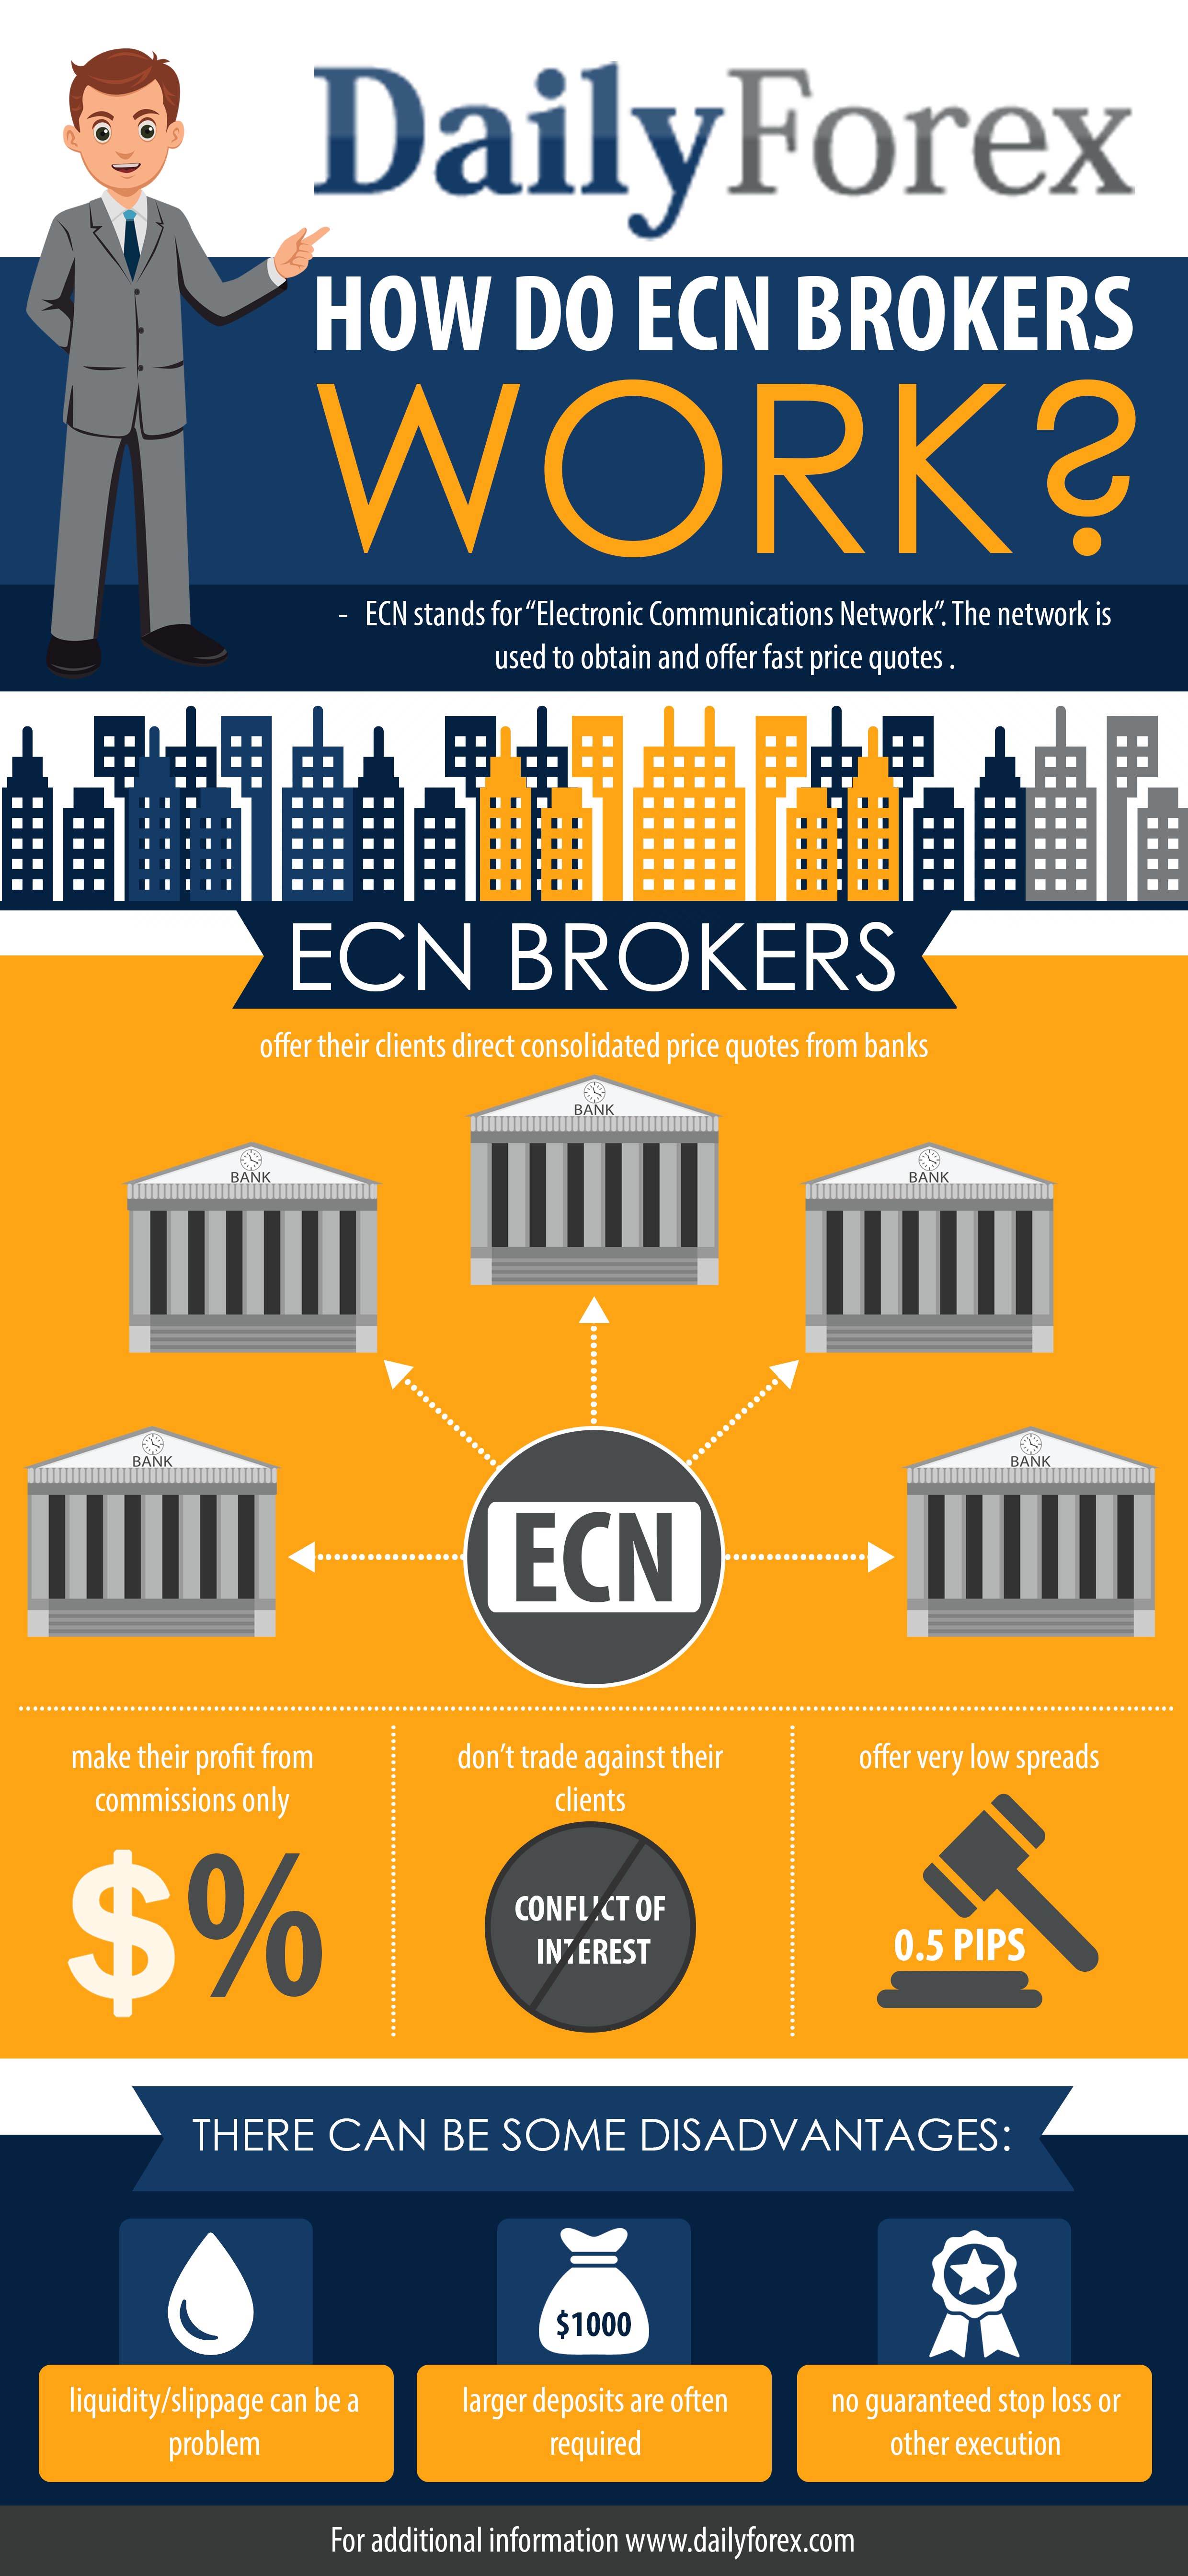 Ecn forex brokers in uk